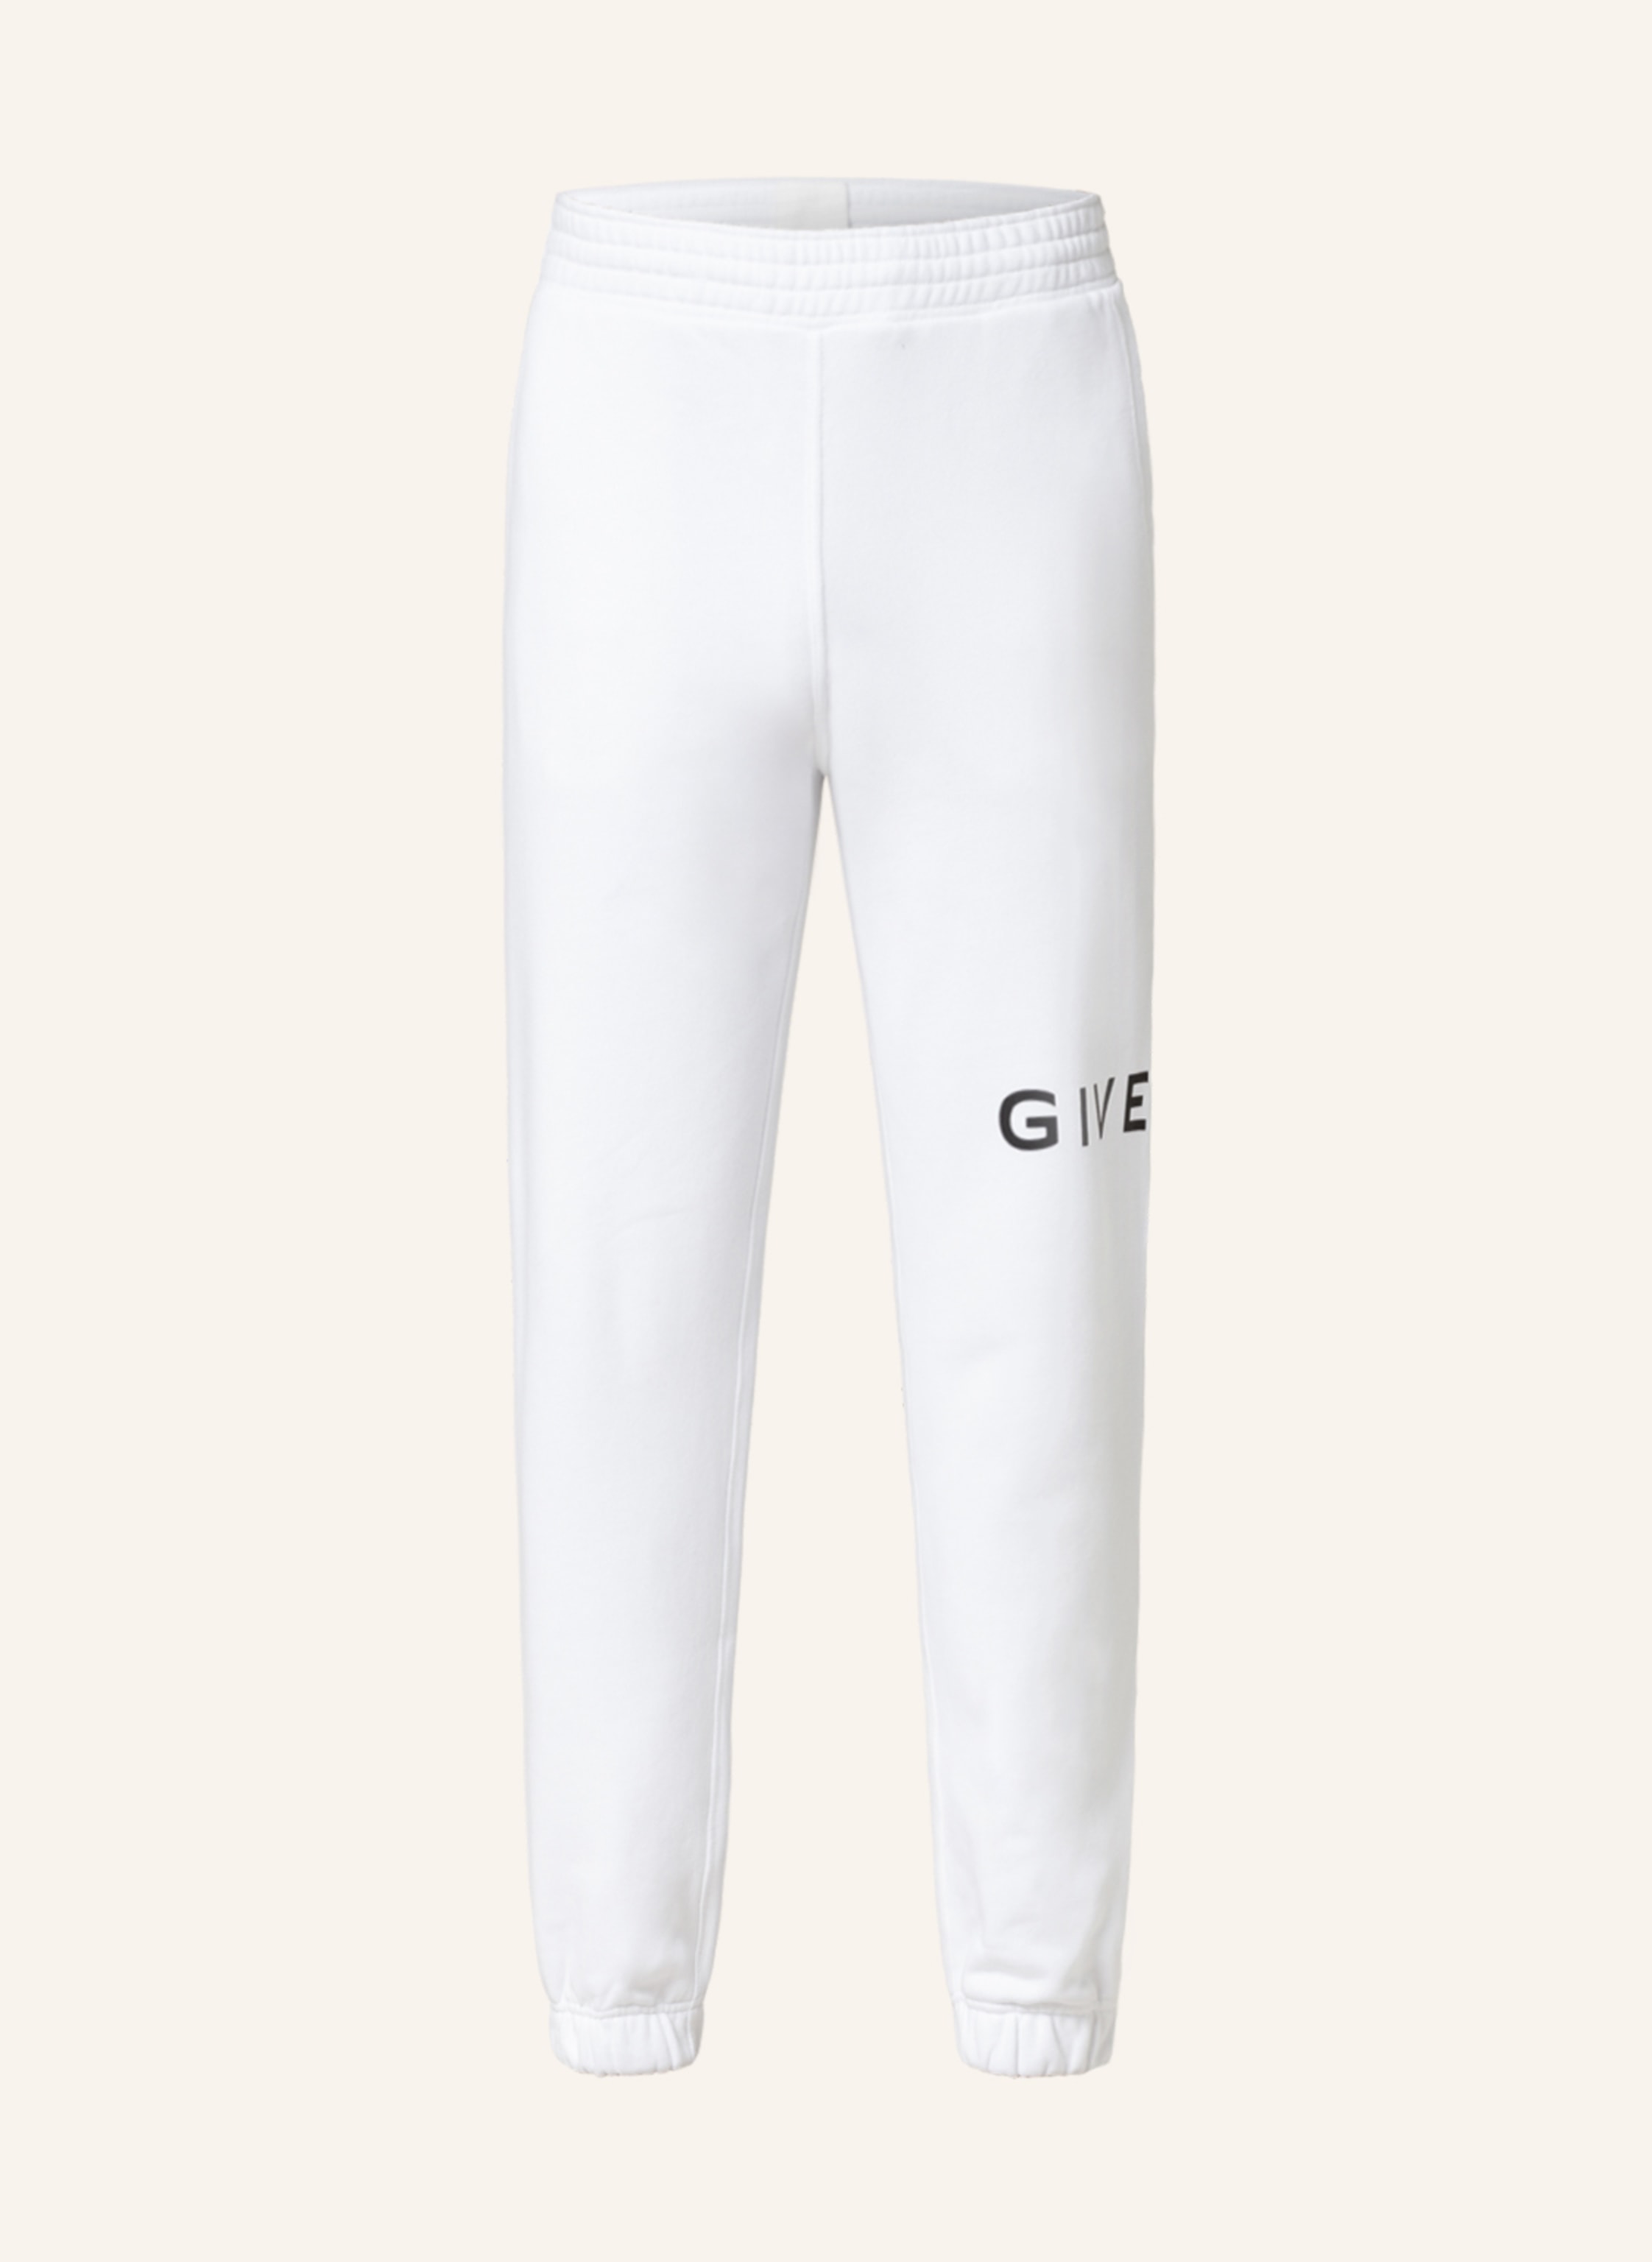 $955 GIVENCHY 4G Side Band Track Pants black Size XXL | eBay